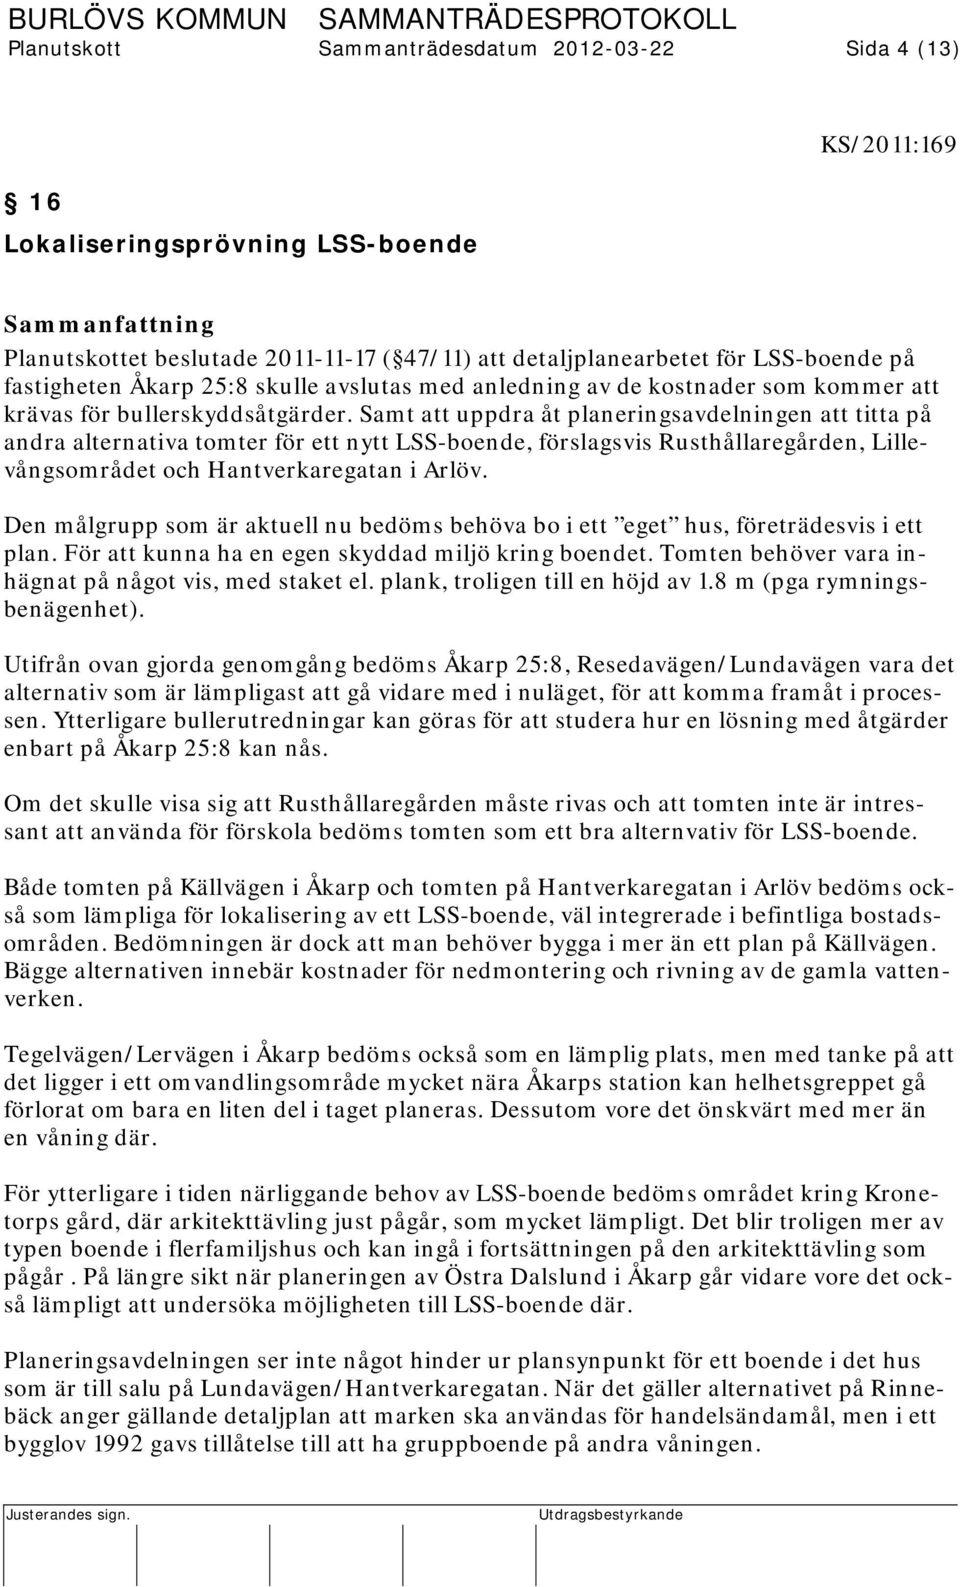 Samt att uppdra åt planeringsavdelningen att titta på andra alternativa tomter för ett nytt LSS-boende, förslagsvis Rusthållaregården, Lillevångsområdet och Hantverkaregatan i Arlöv.